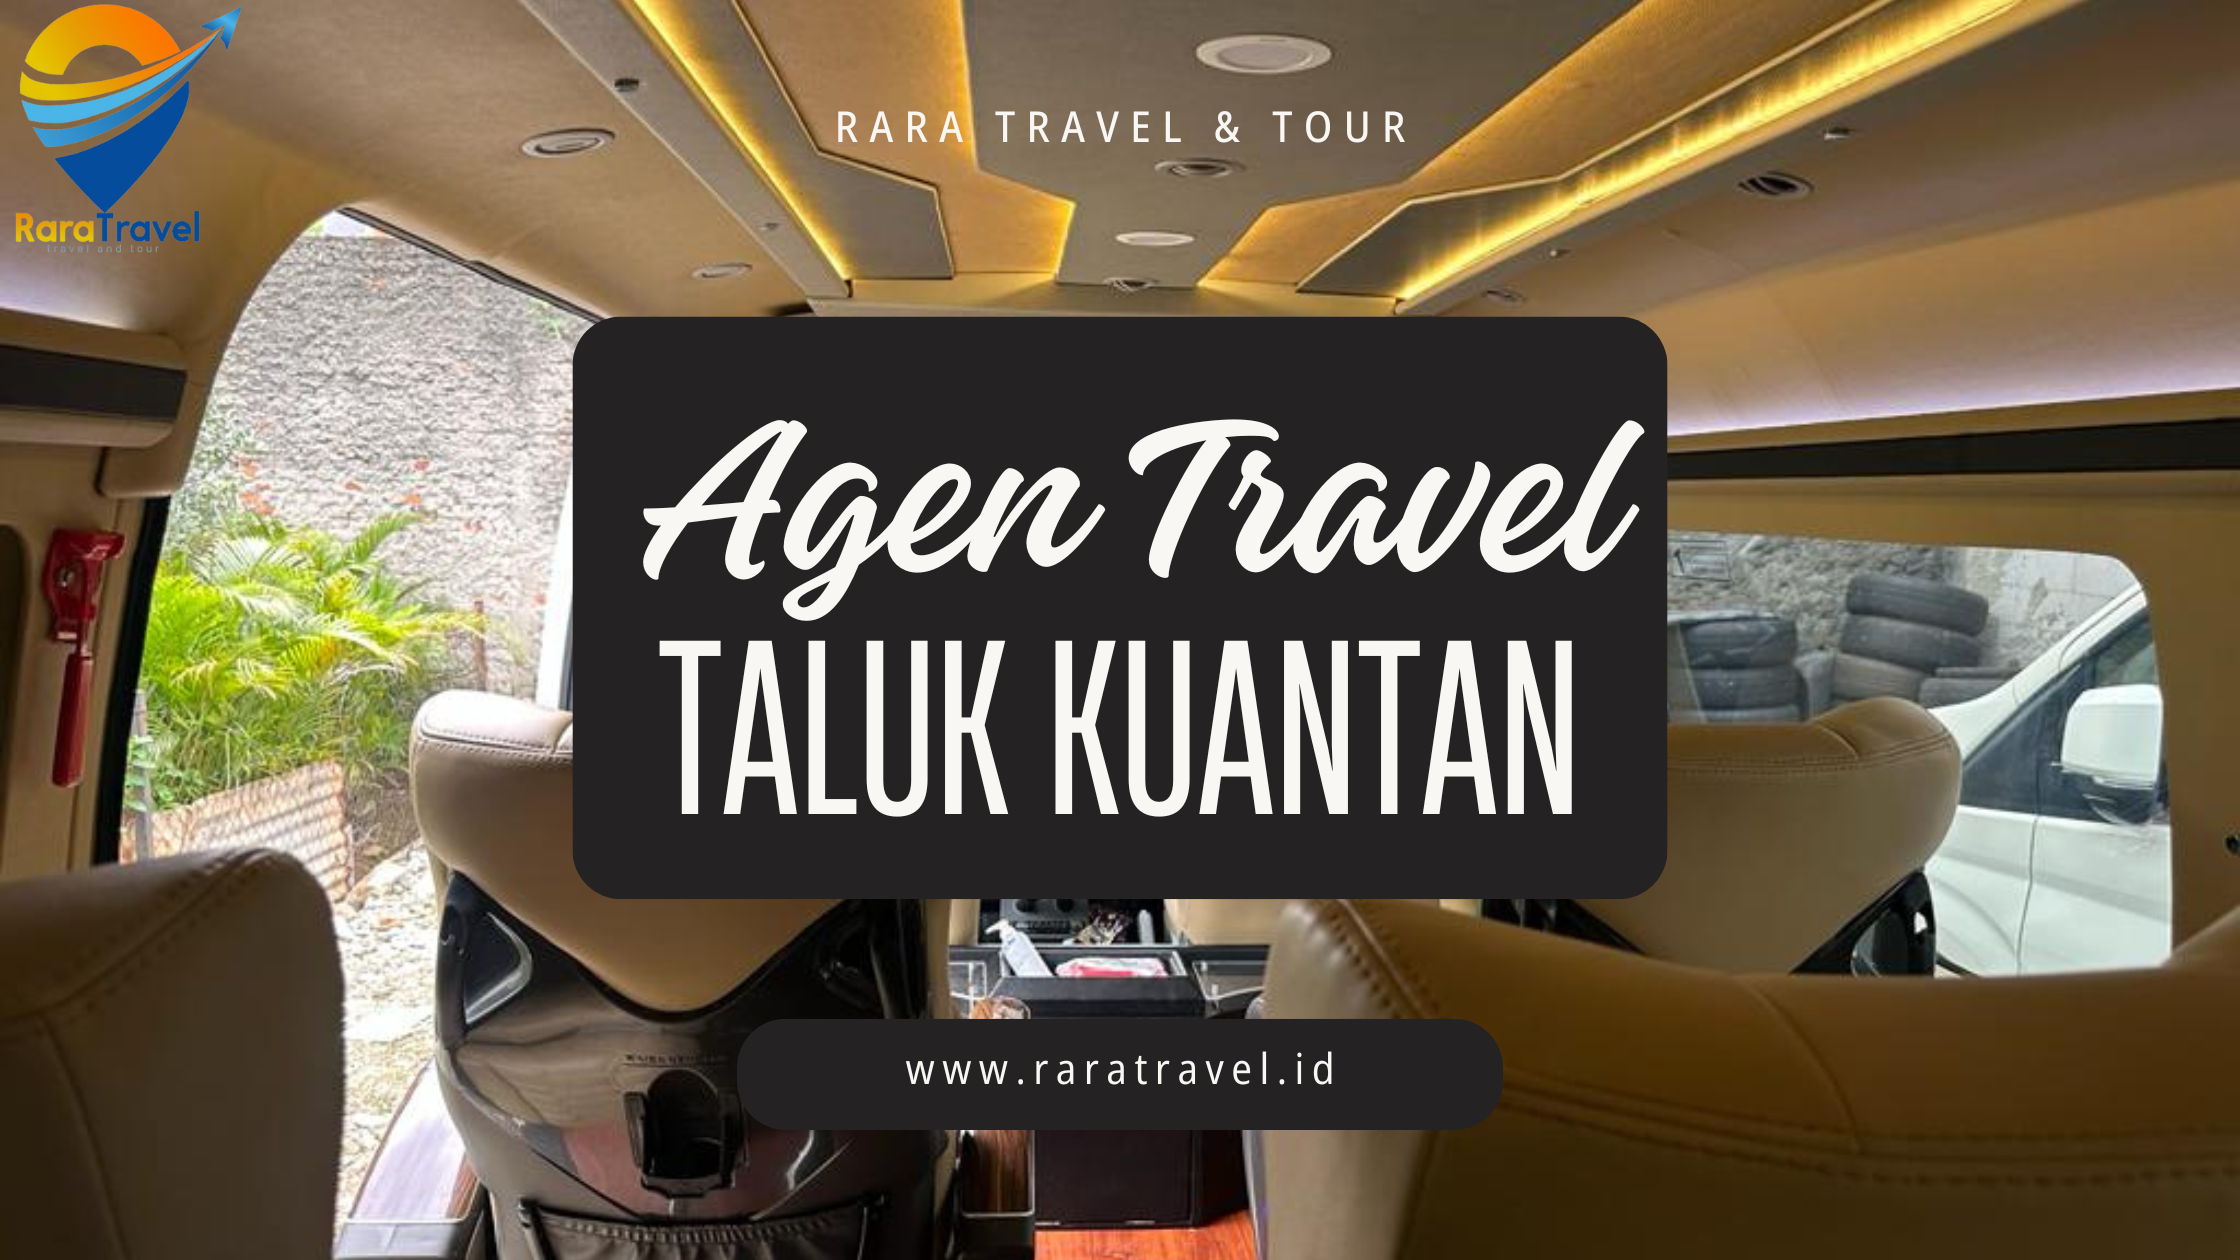 Agen Travel Taluk Kuantan Sangingi Riau ke Berbagai Tujuan Harga Tiket Murah Layanan 24 Jam - RARATRAVEL.ID